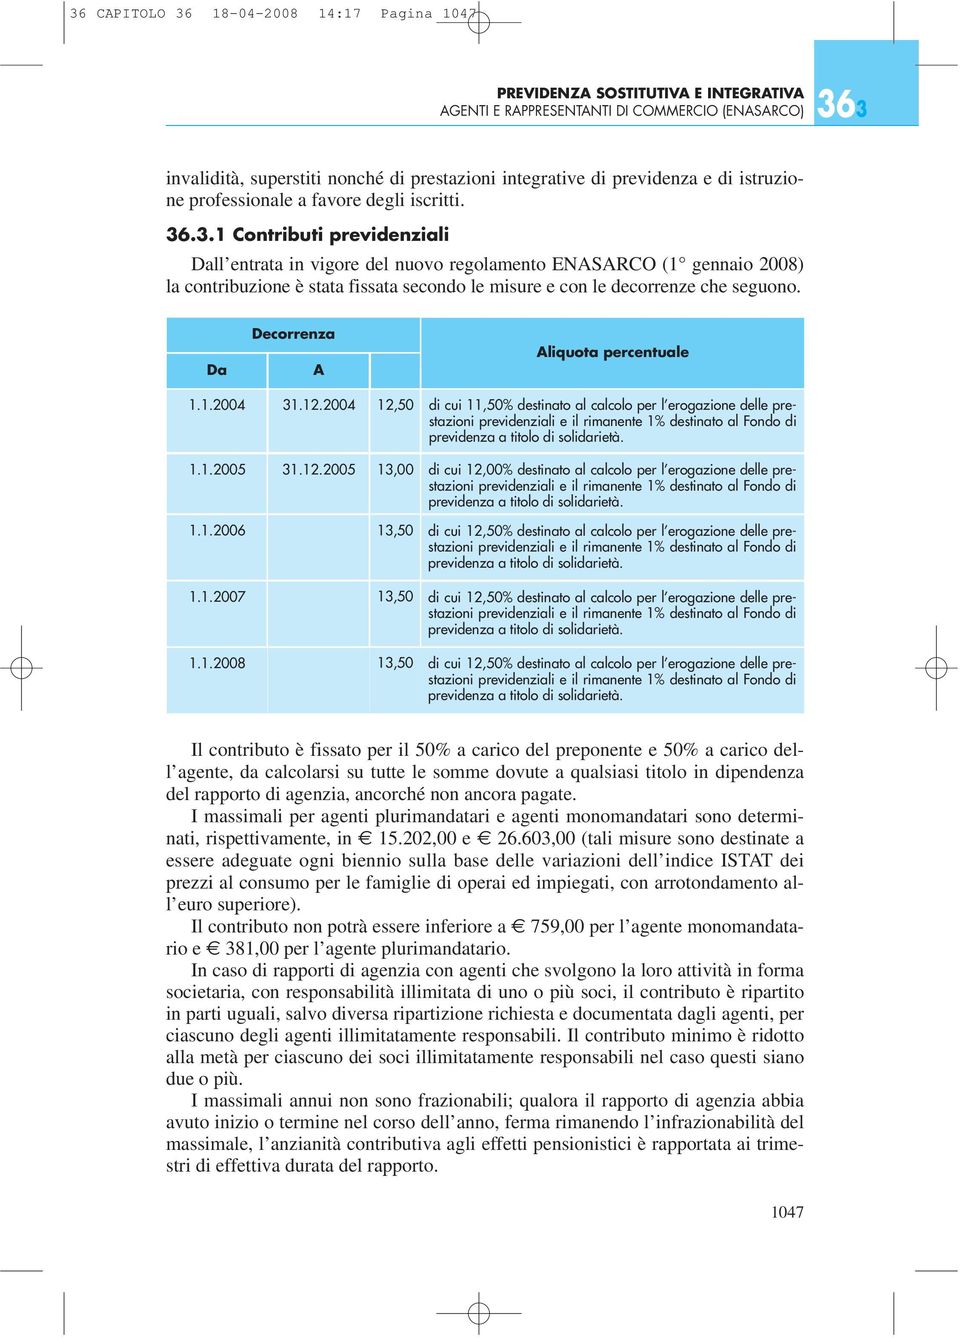 .3.1 Contributi previdenziali Dall entrata in vigore del nuovo regolamento ENASARCO (1 gennaio 2008) la contribuzione è stata fissata secondo le misure e con le decorrenze che seguono.